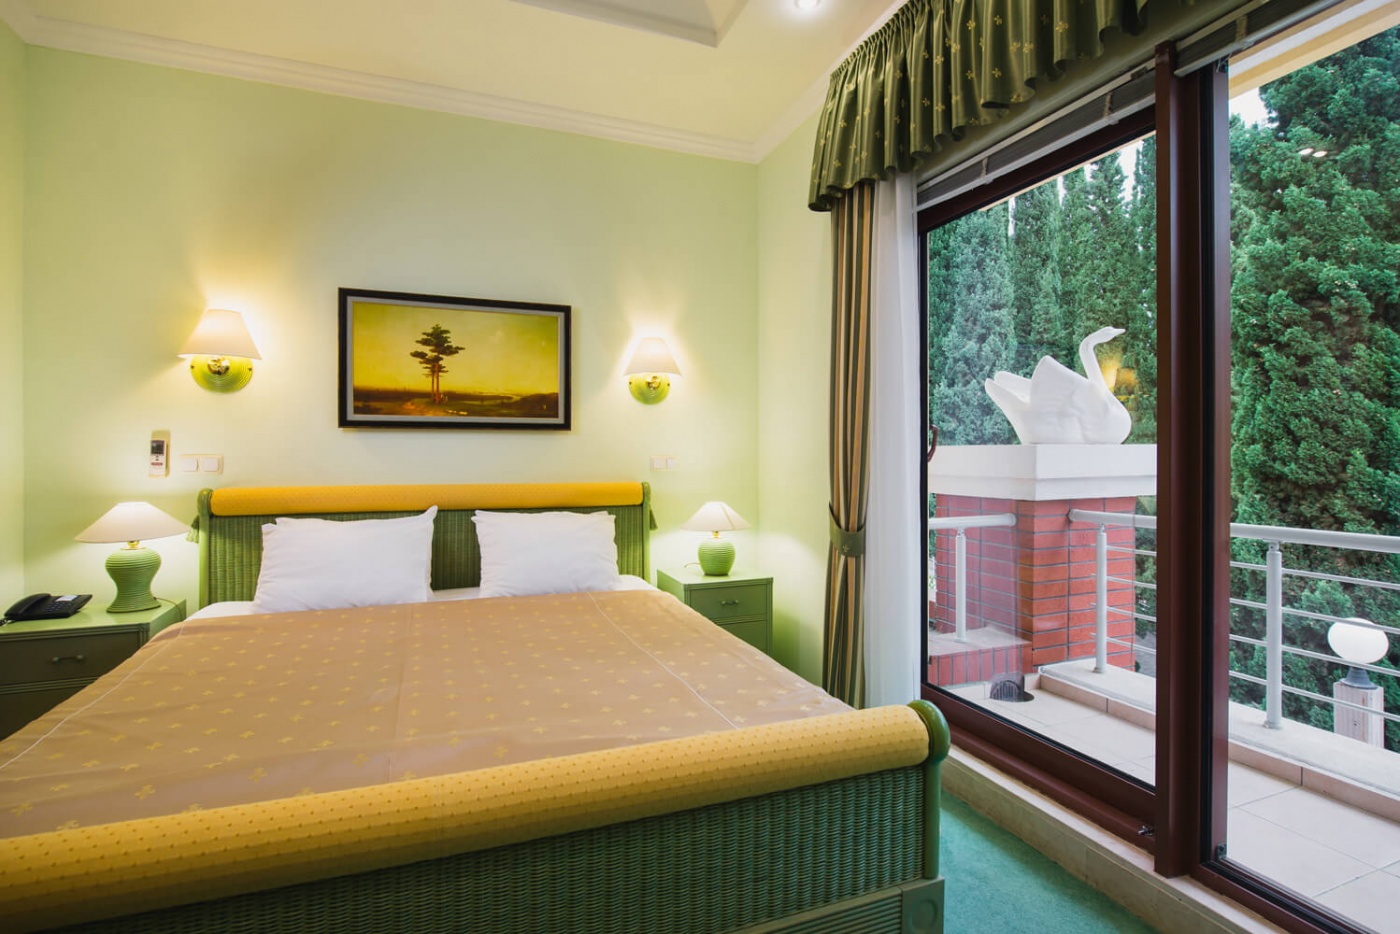  Отель «More Spa & Resort» Республика Крым Дуплекс с двумя спальнями, фото 1